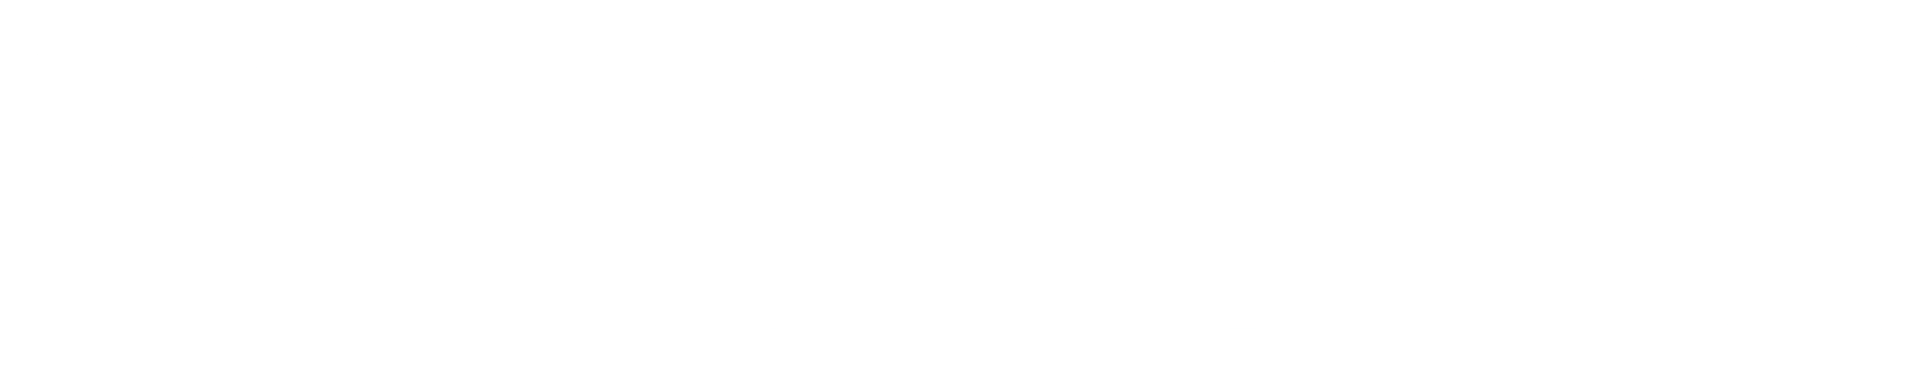 Ylem logo